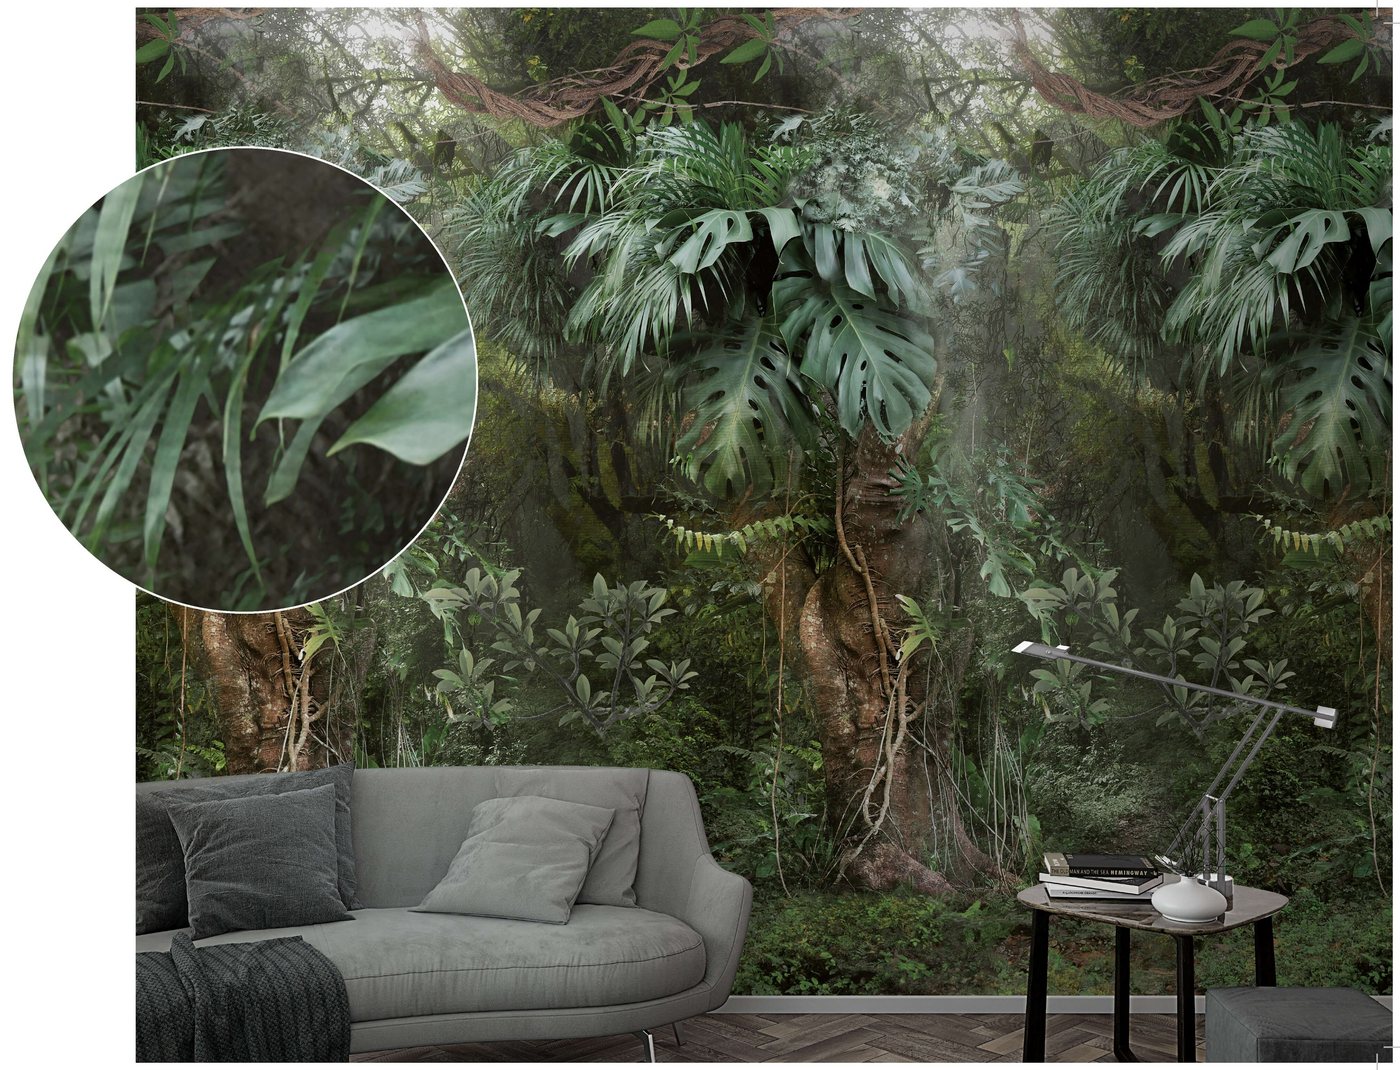 Newroom Vliestapete, [ 2,7 x 1,59m ] großzügiges Motiv - kein wiederkehrendes Muster - nahtlos große Flächen möglich - Fototapete Wandbild Dschungel Palmen Urwald Made in Germany von Newroom